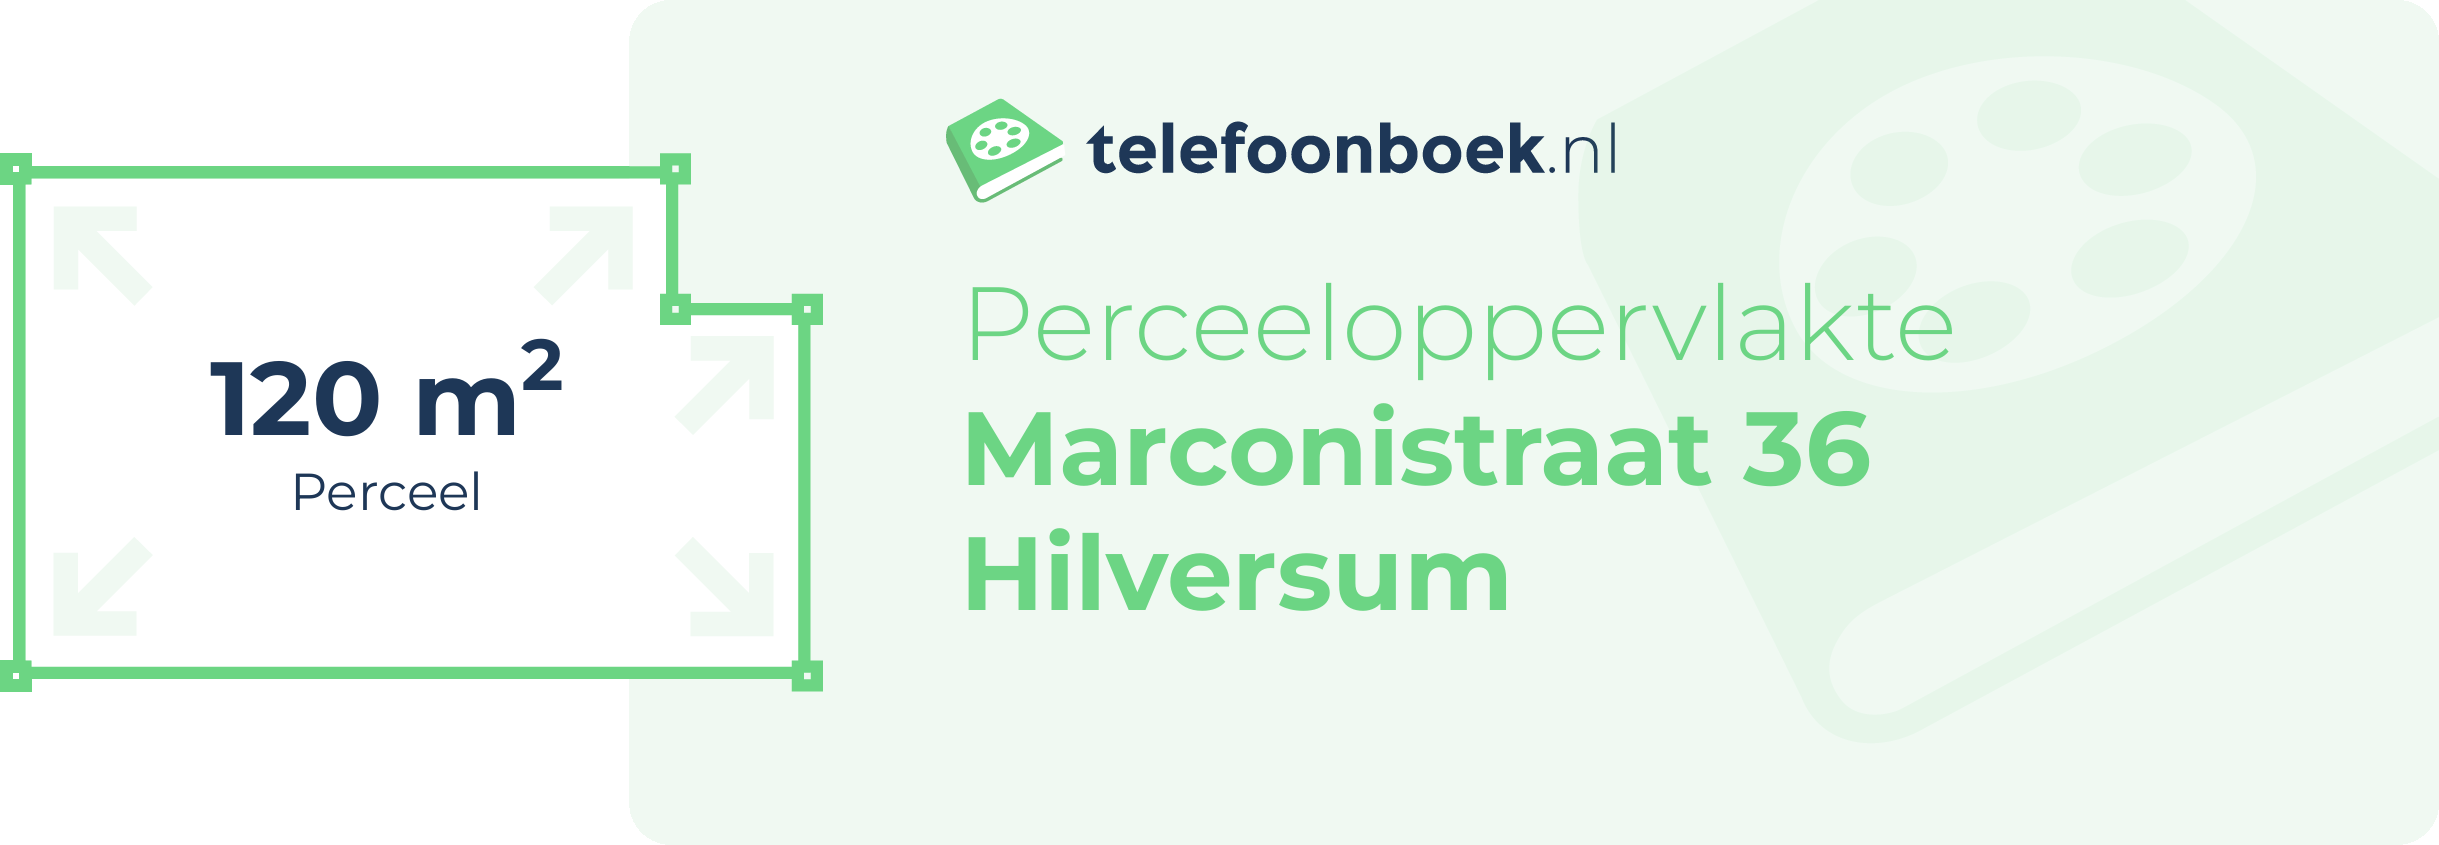 Perceeloppervlakte Marconistraat 36 Hilversum